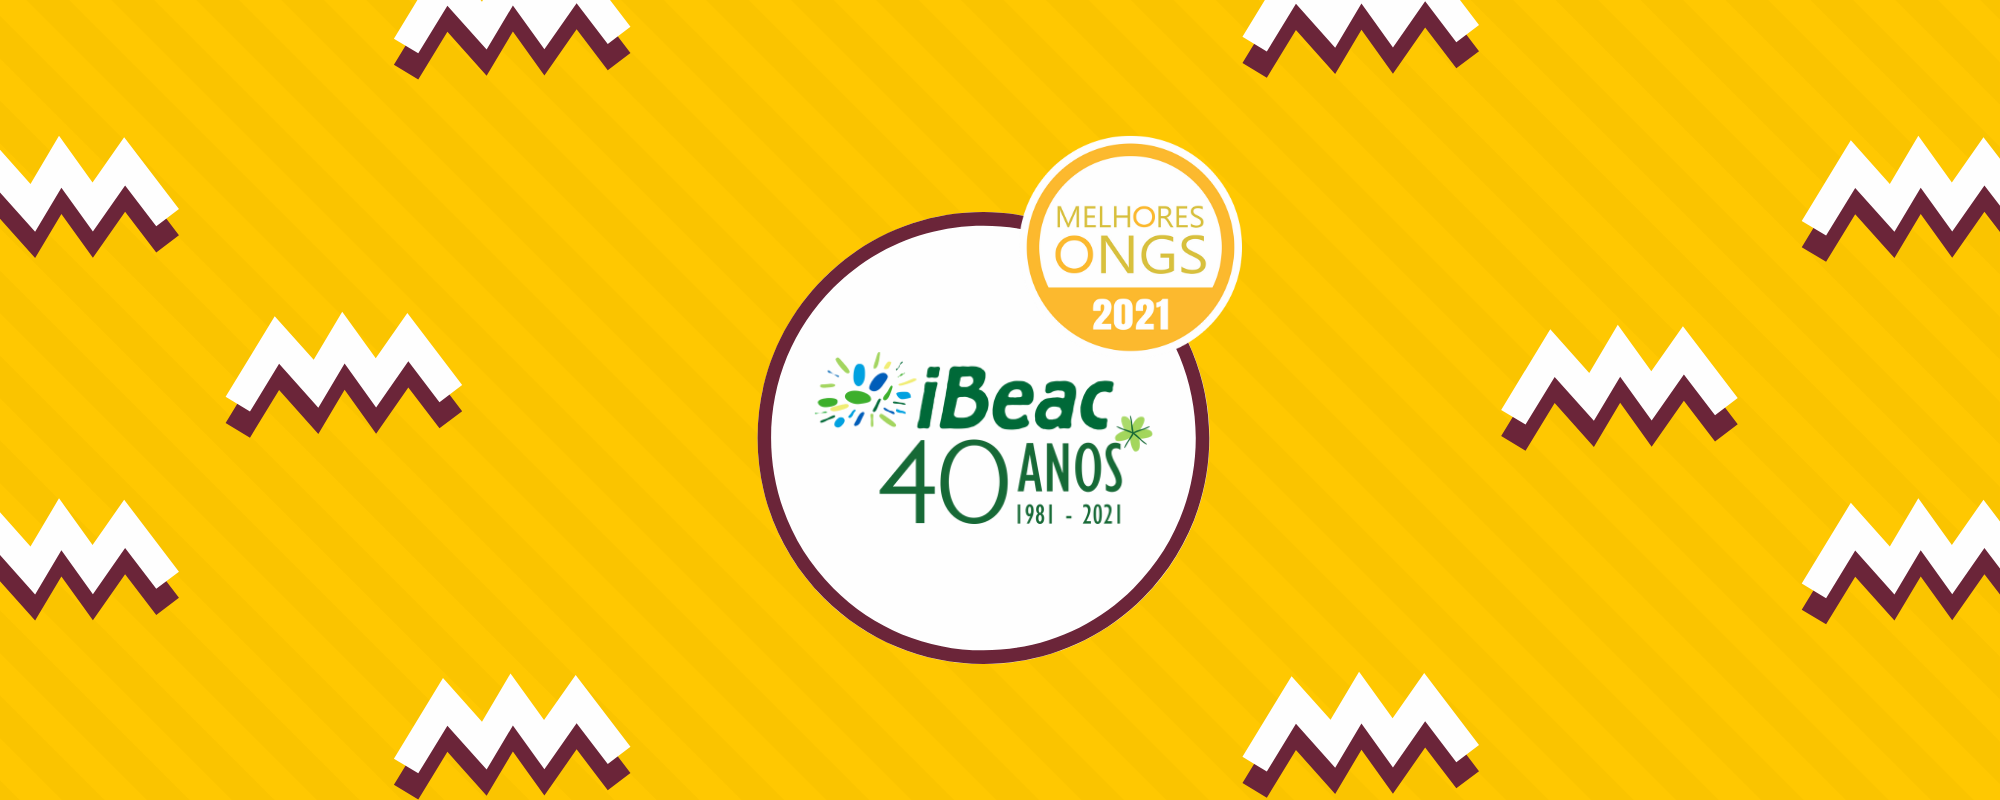 IBEAC é uma das 100 Melhores ONGs de 2021